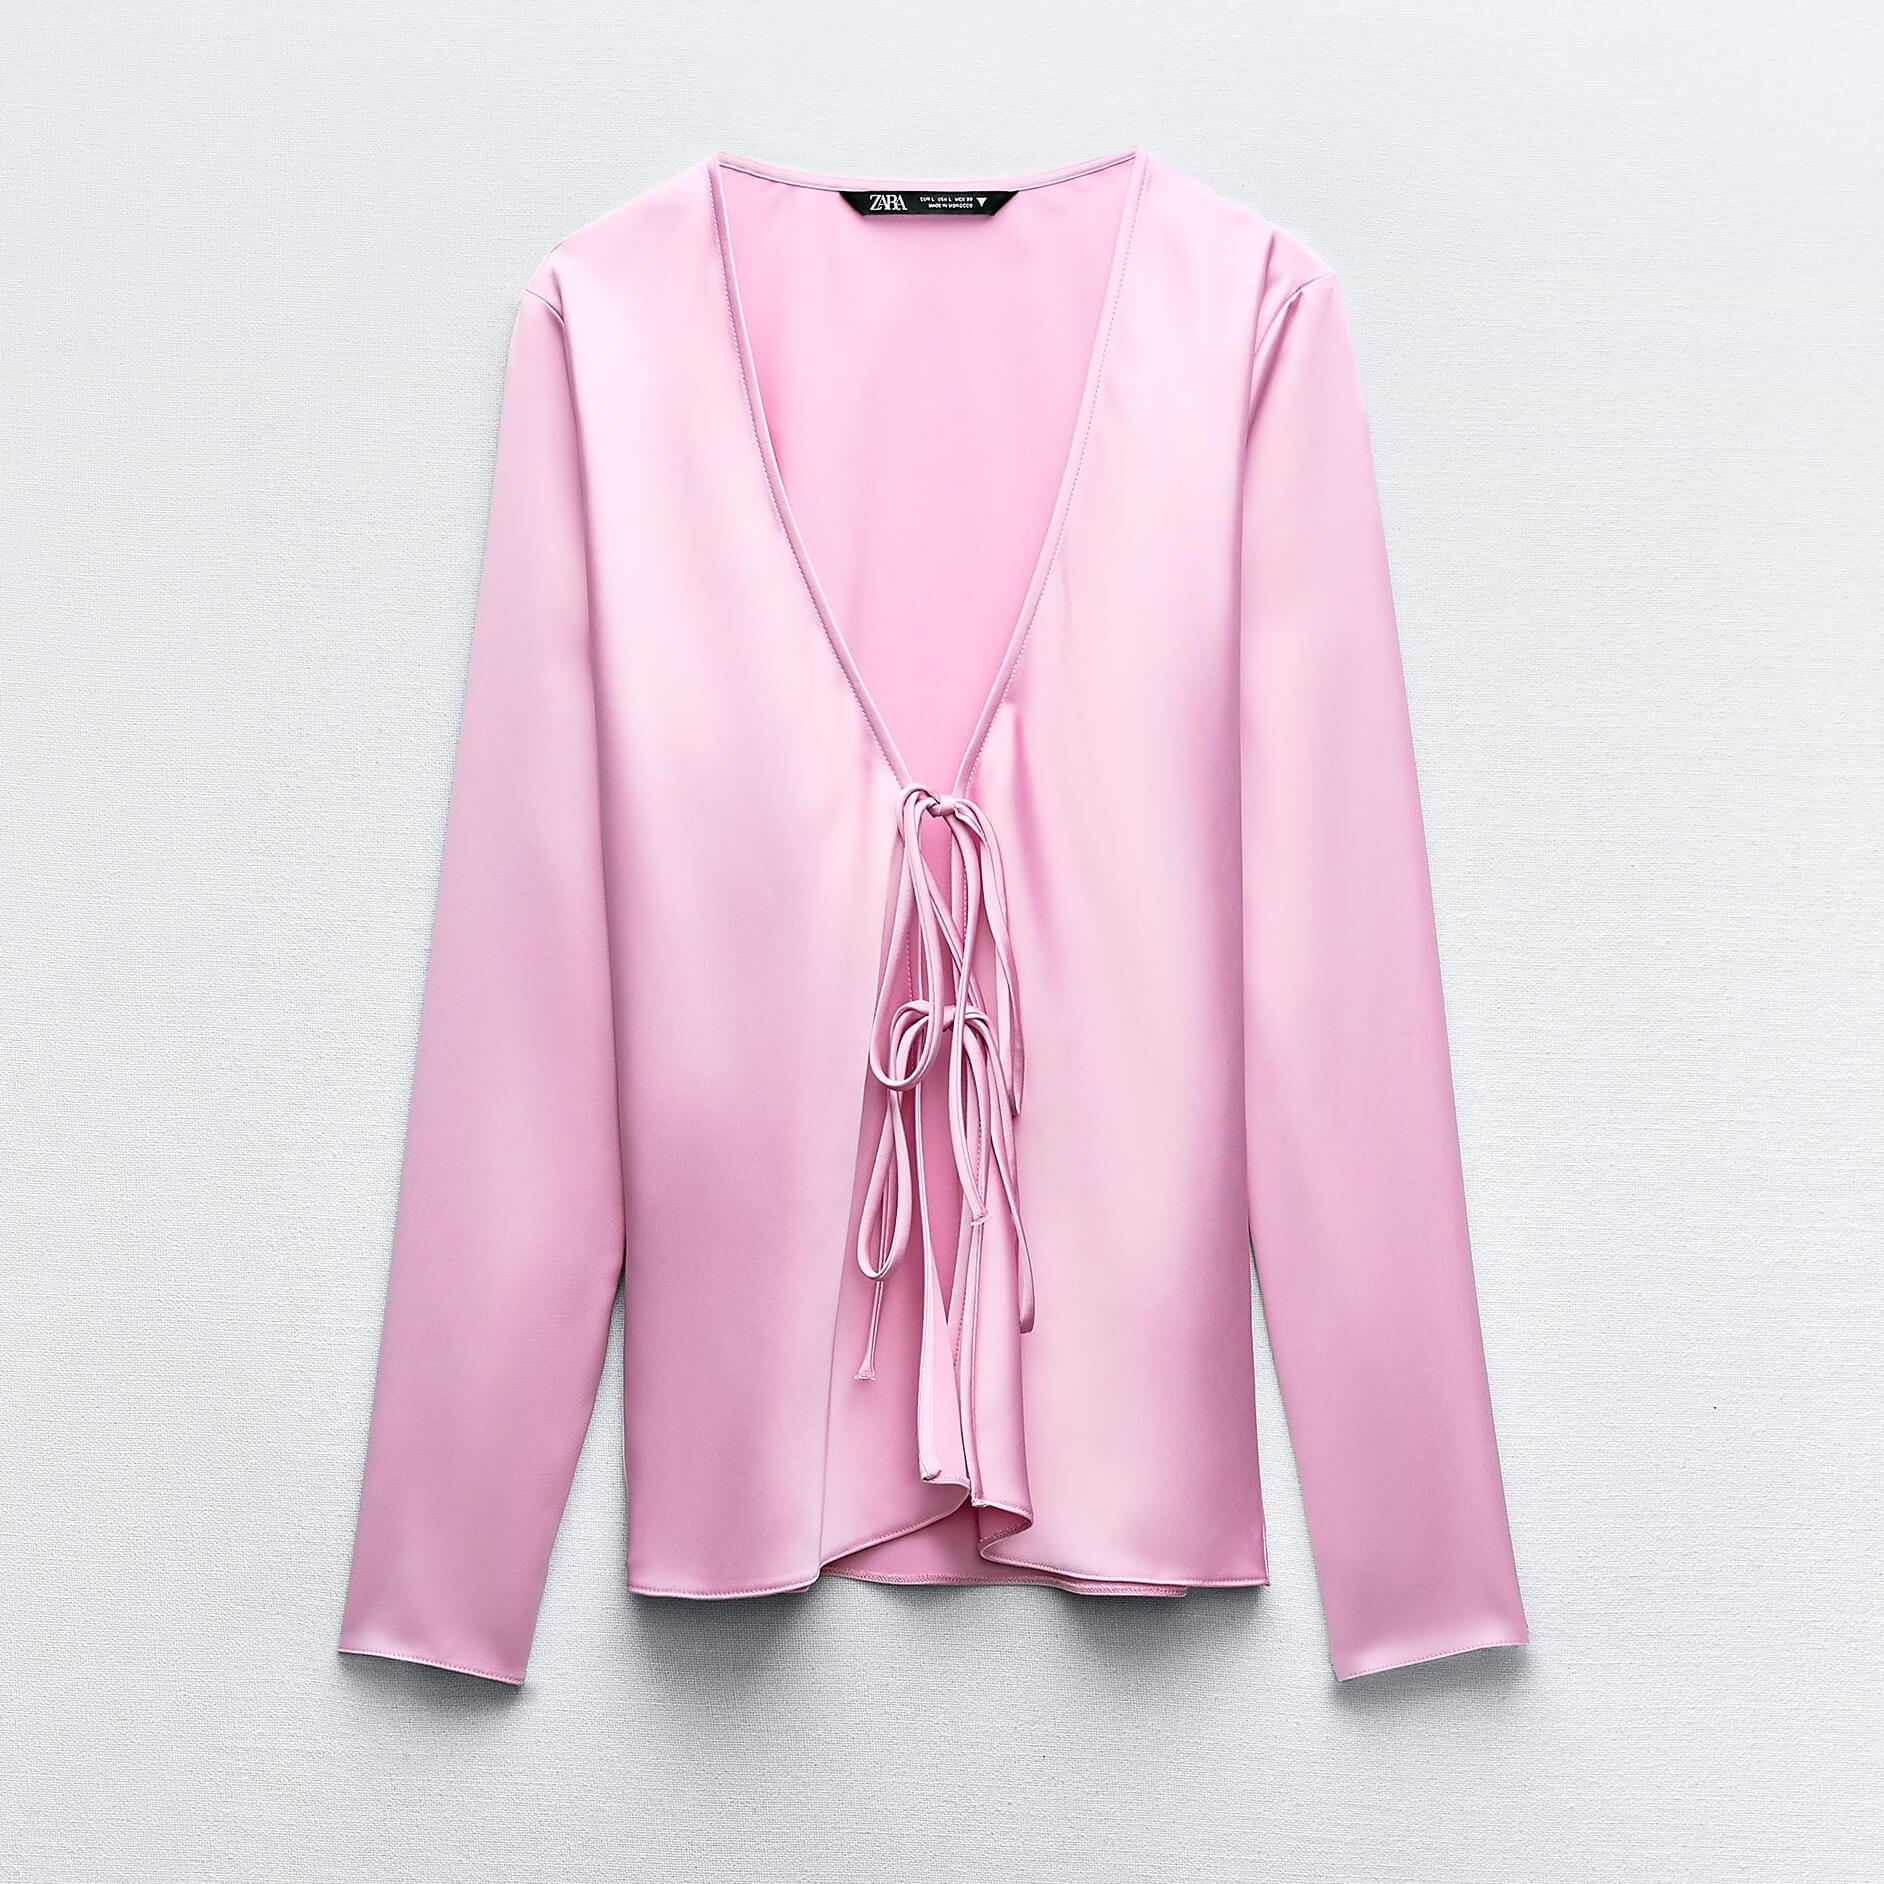 Рубашка Zara Satin With Ties, розовый рубашка zara satin link cuff links бордовый